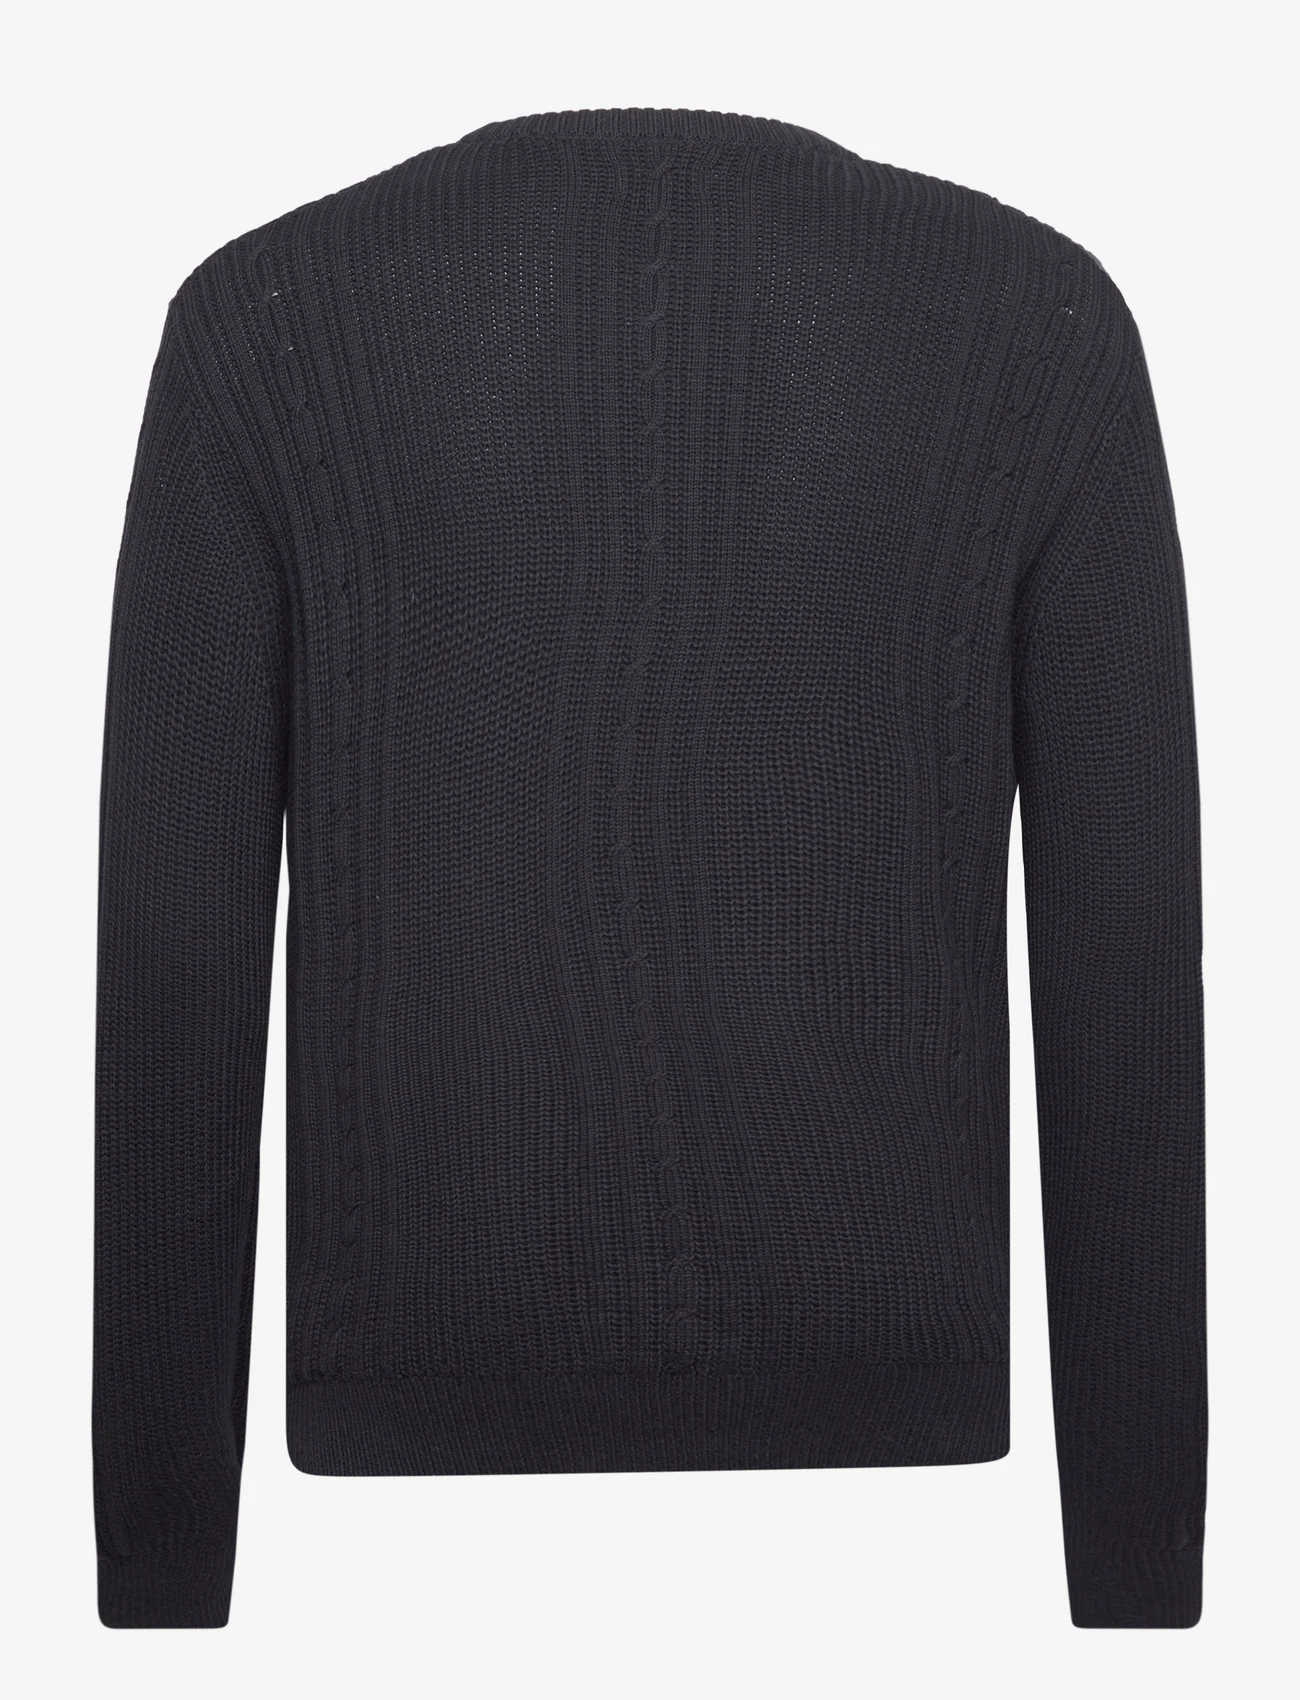 Napapijri - D-TRONDHEIM C - knitted round necks - 041 black - 1